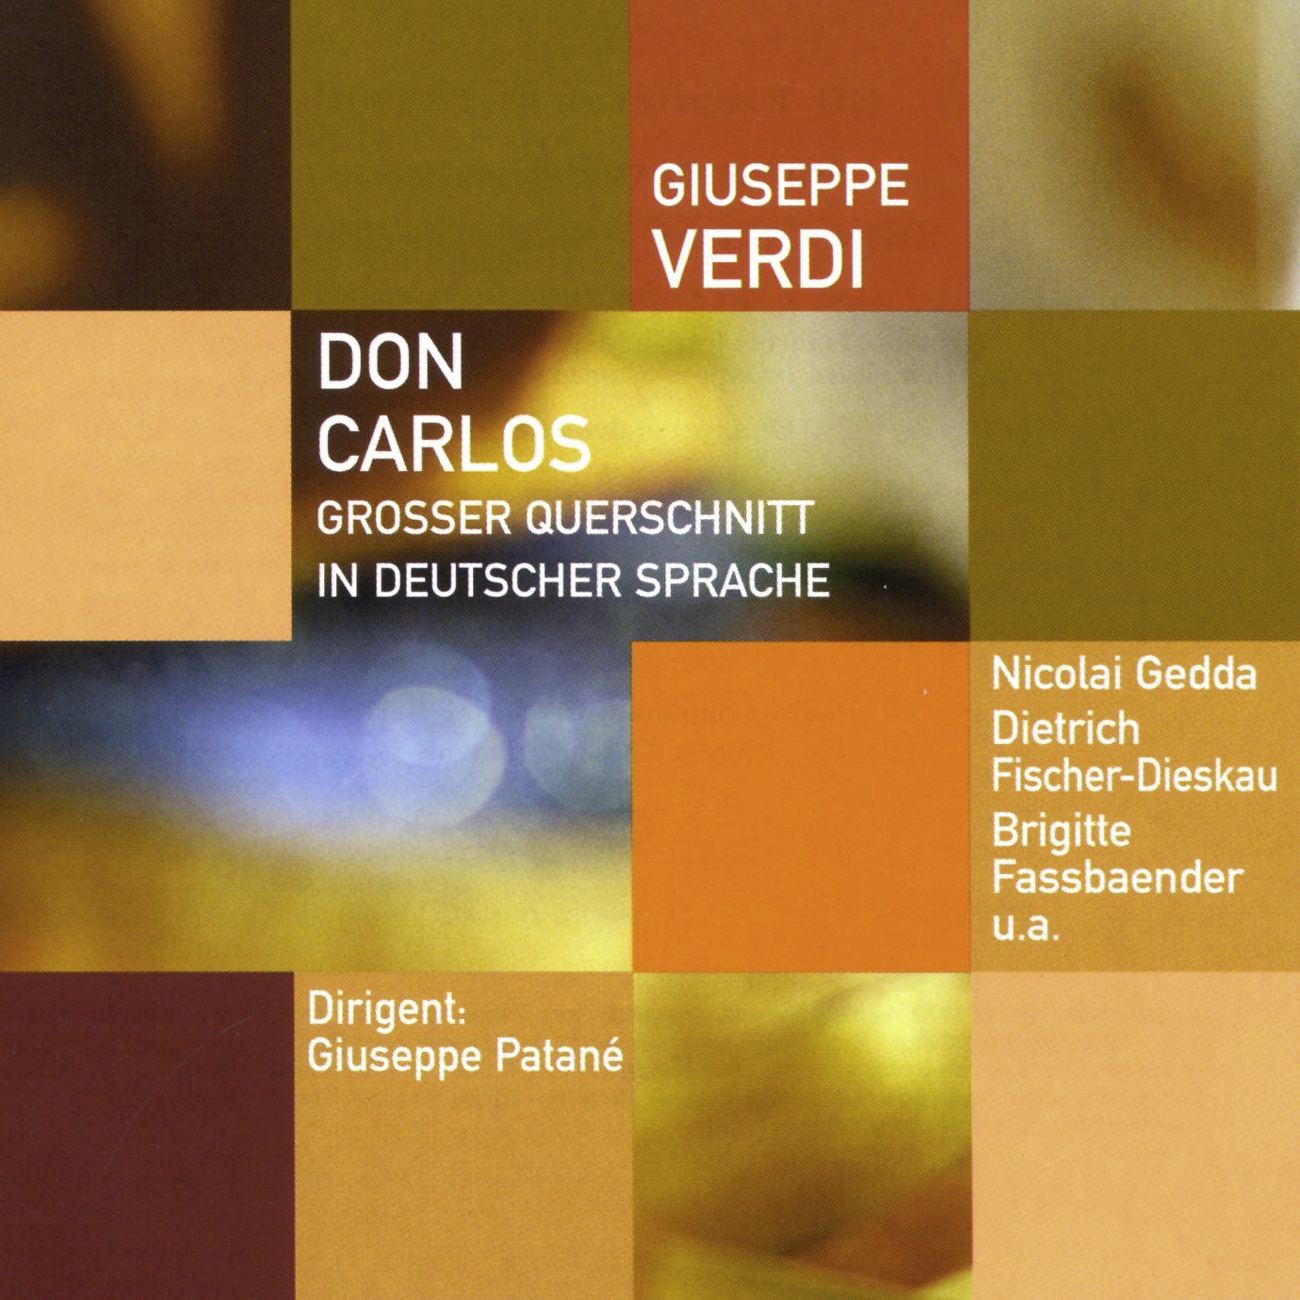 Don Carlos  Oper in 4 Akten Gro er Querschnitt in deutscher Sprache 2001 Digital Remaster, Erster Akt: Der Welt entsag' ich